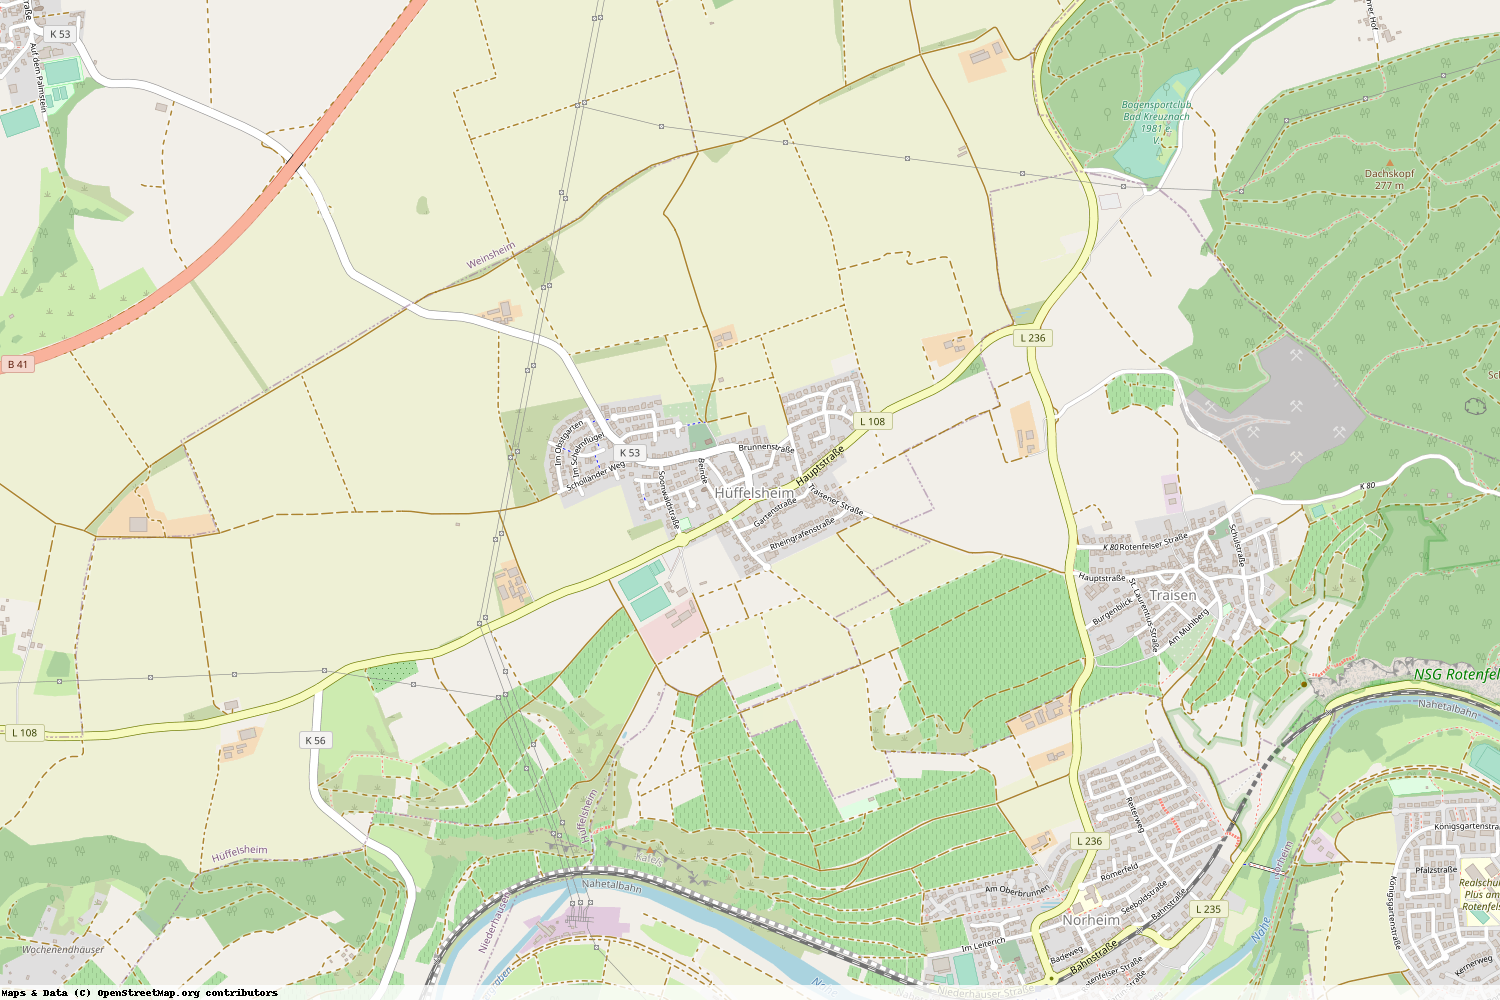 Ist gerade Stromausfall in Rheinland-Pfalz - Bad Kreuznach - Hüffelsheim?